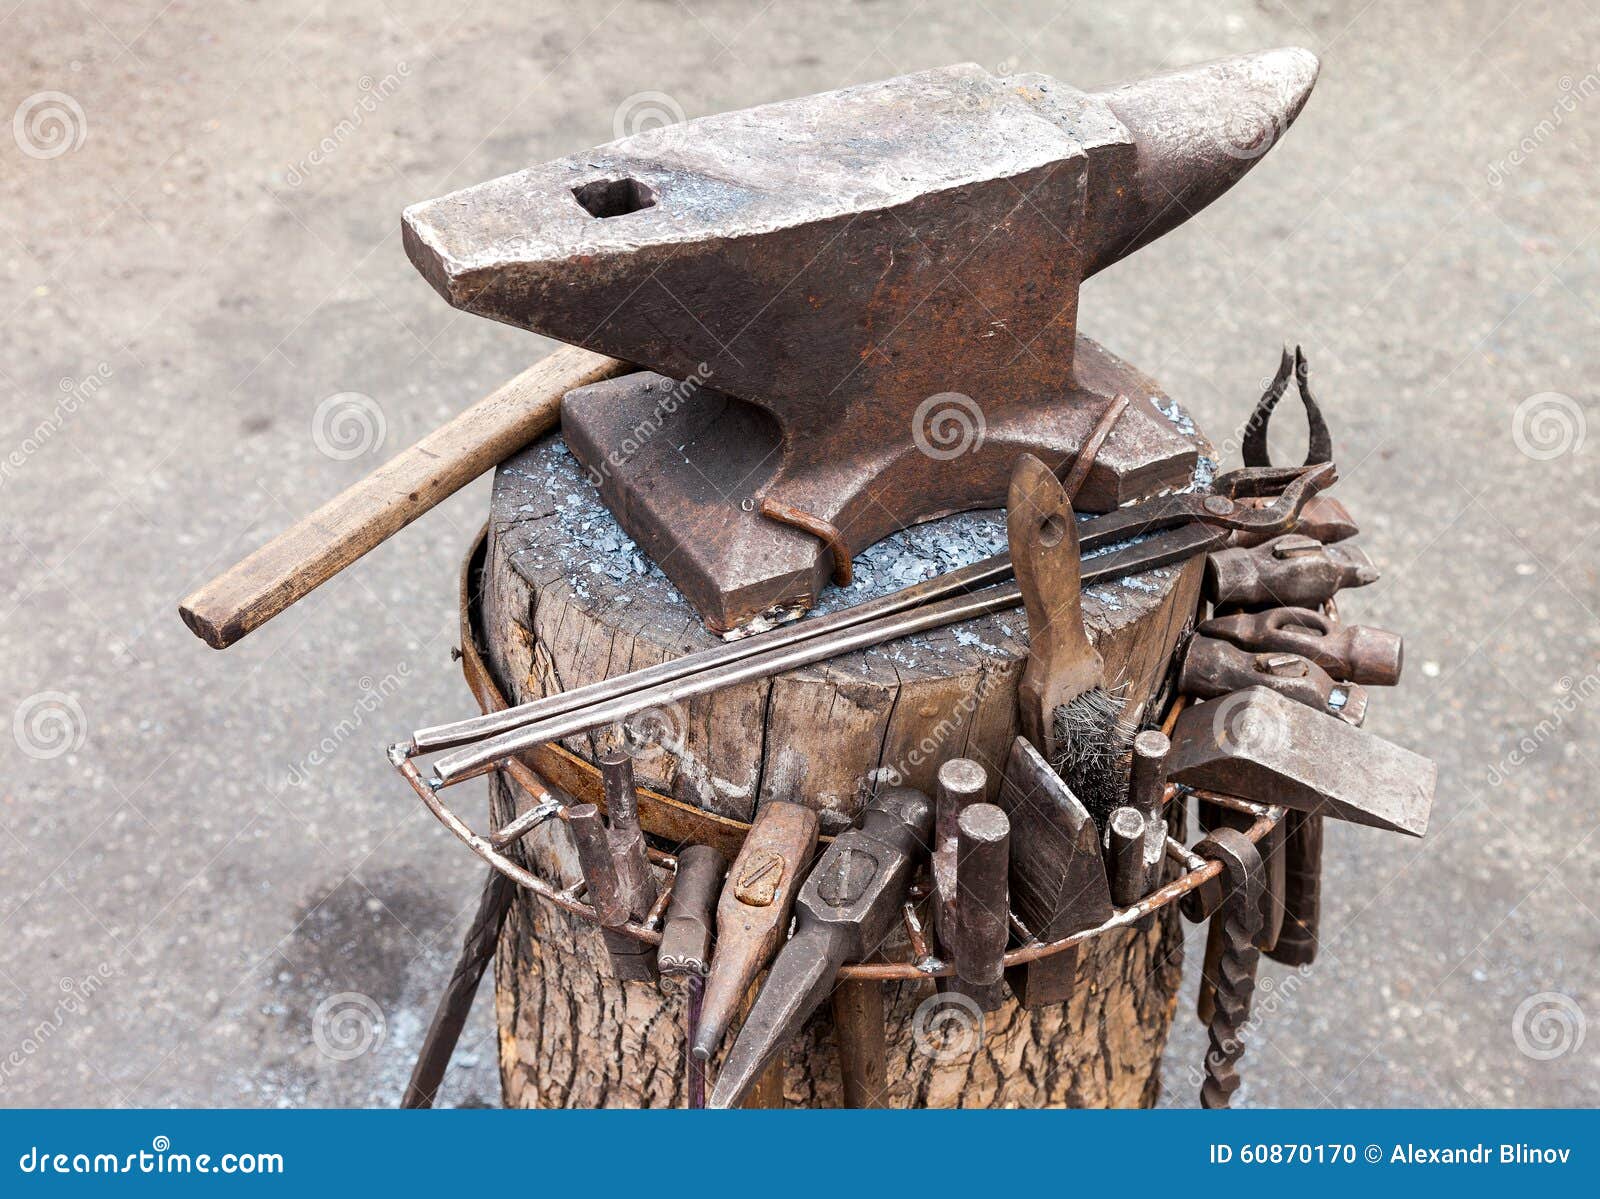 超过 100 张关于“铁砧”和“铁匠”的免费图片 - Pixabay